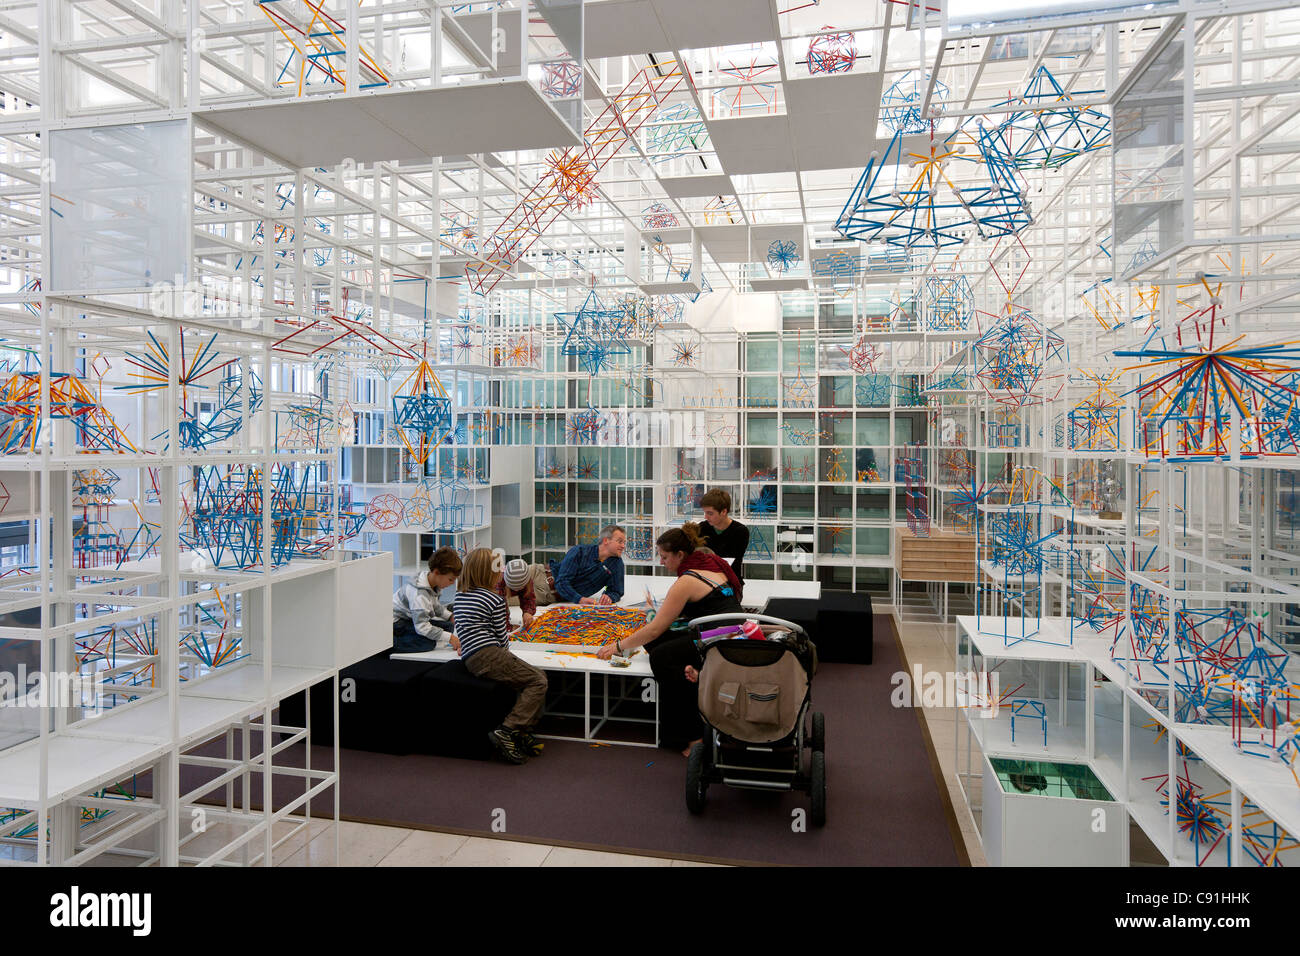 Das Hamburger Kinderzimmer ein Spielraum für den Anfang der Kritik von Olafur Eliasson Galerie d'art contemporain Hamburger Ku Banque D'Images